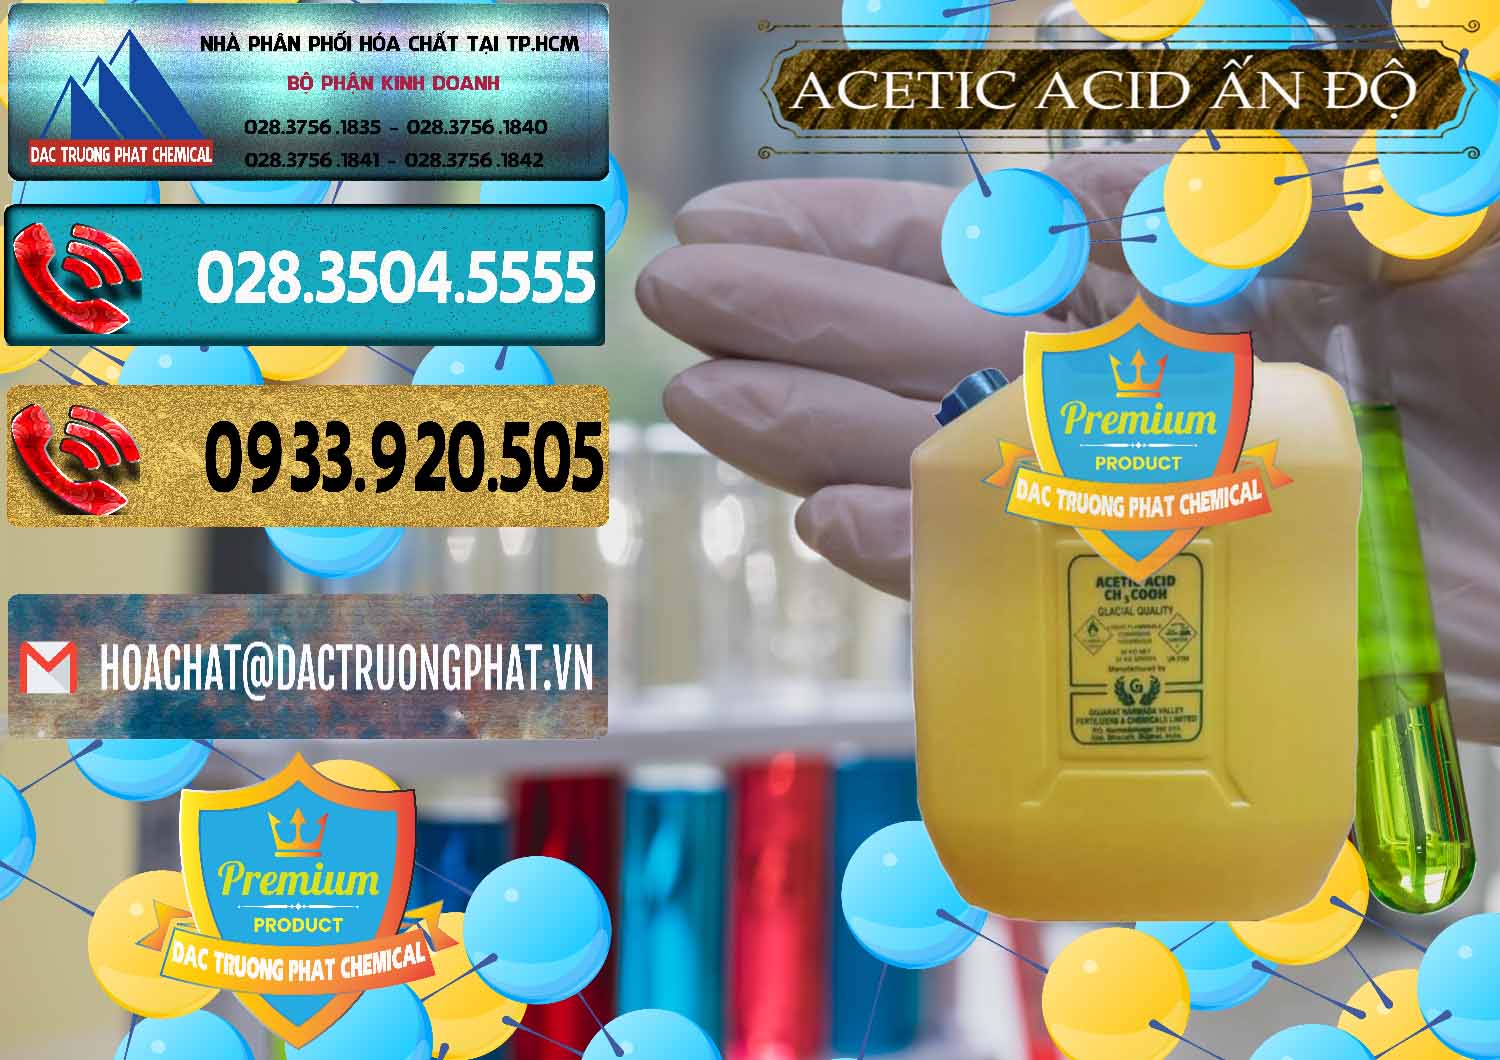 Bán Acetic Acid – Axit Acetic Ấn Độ India - 0359 - Phân phối và bán hóa chất tại TP.HCM - hoachatdetnhuom.com